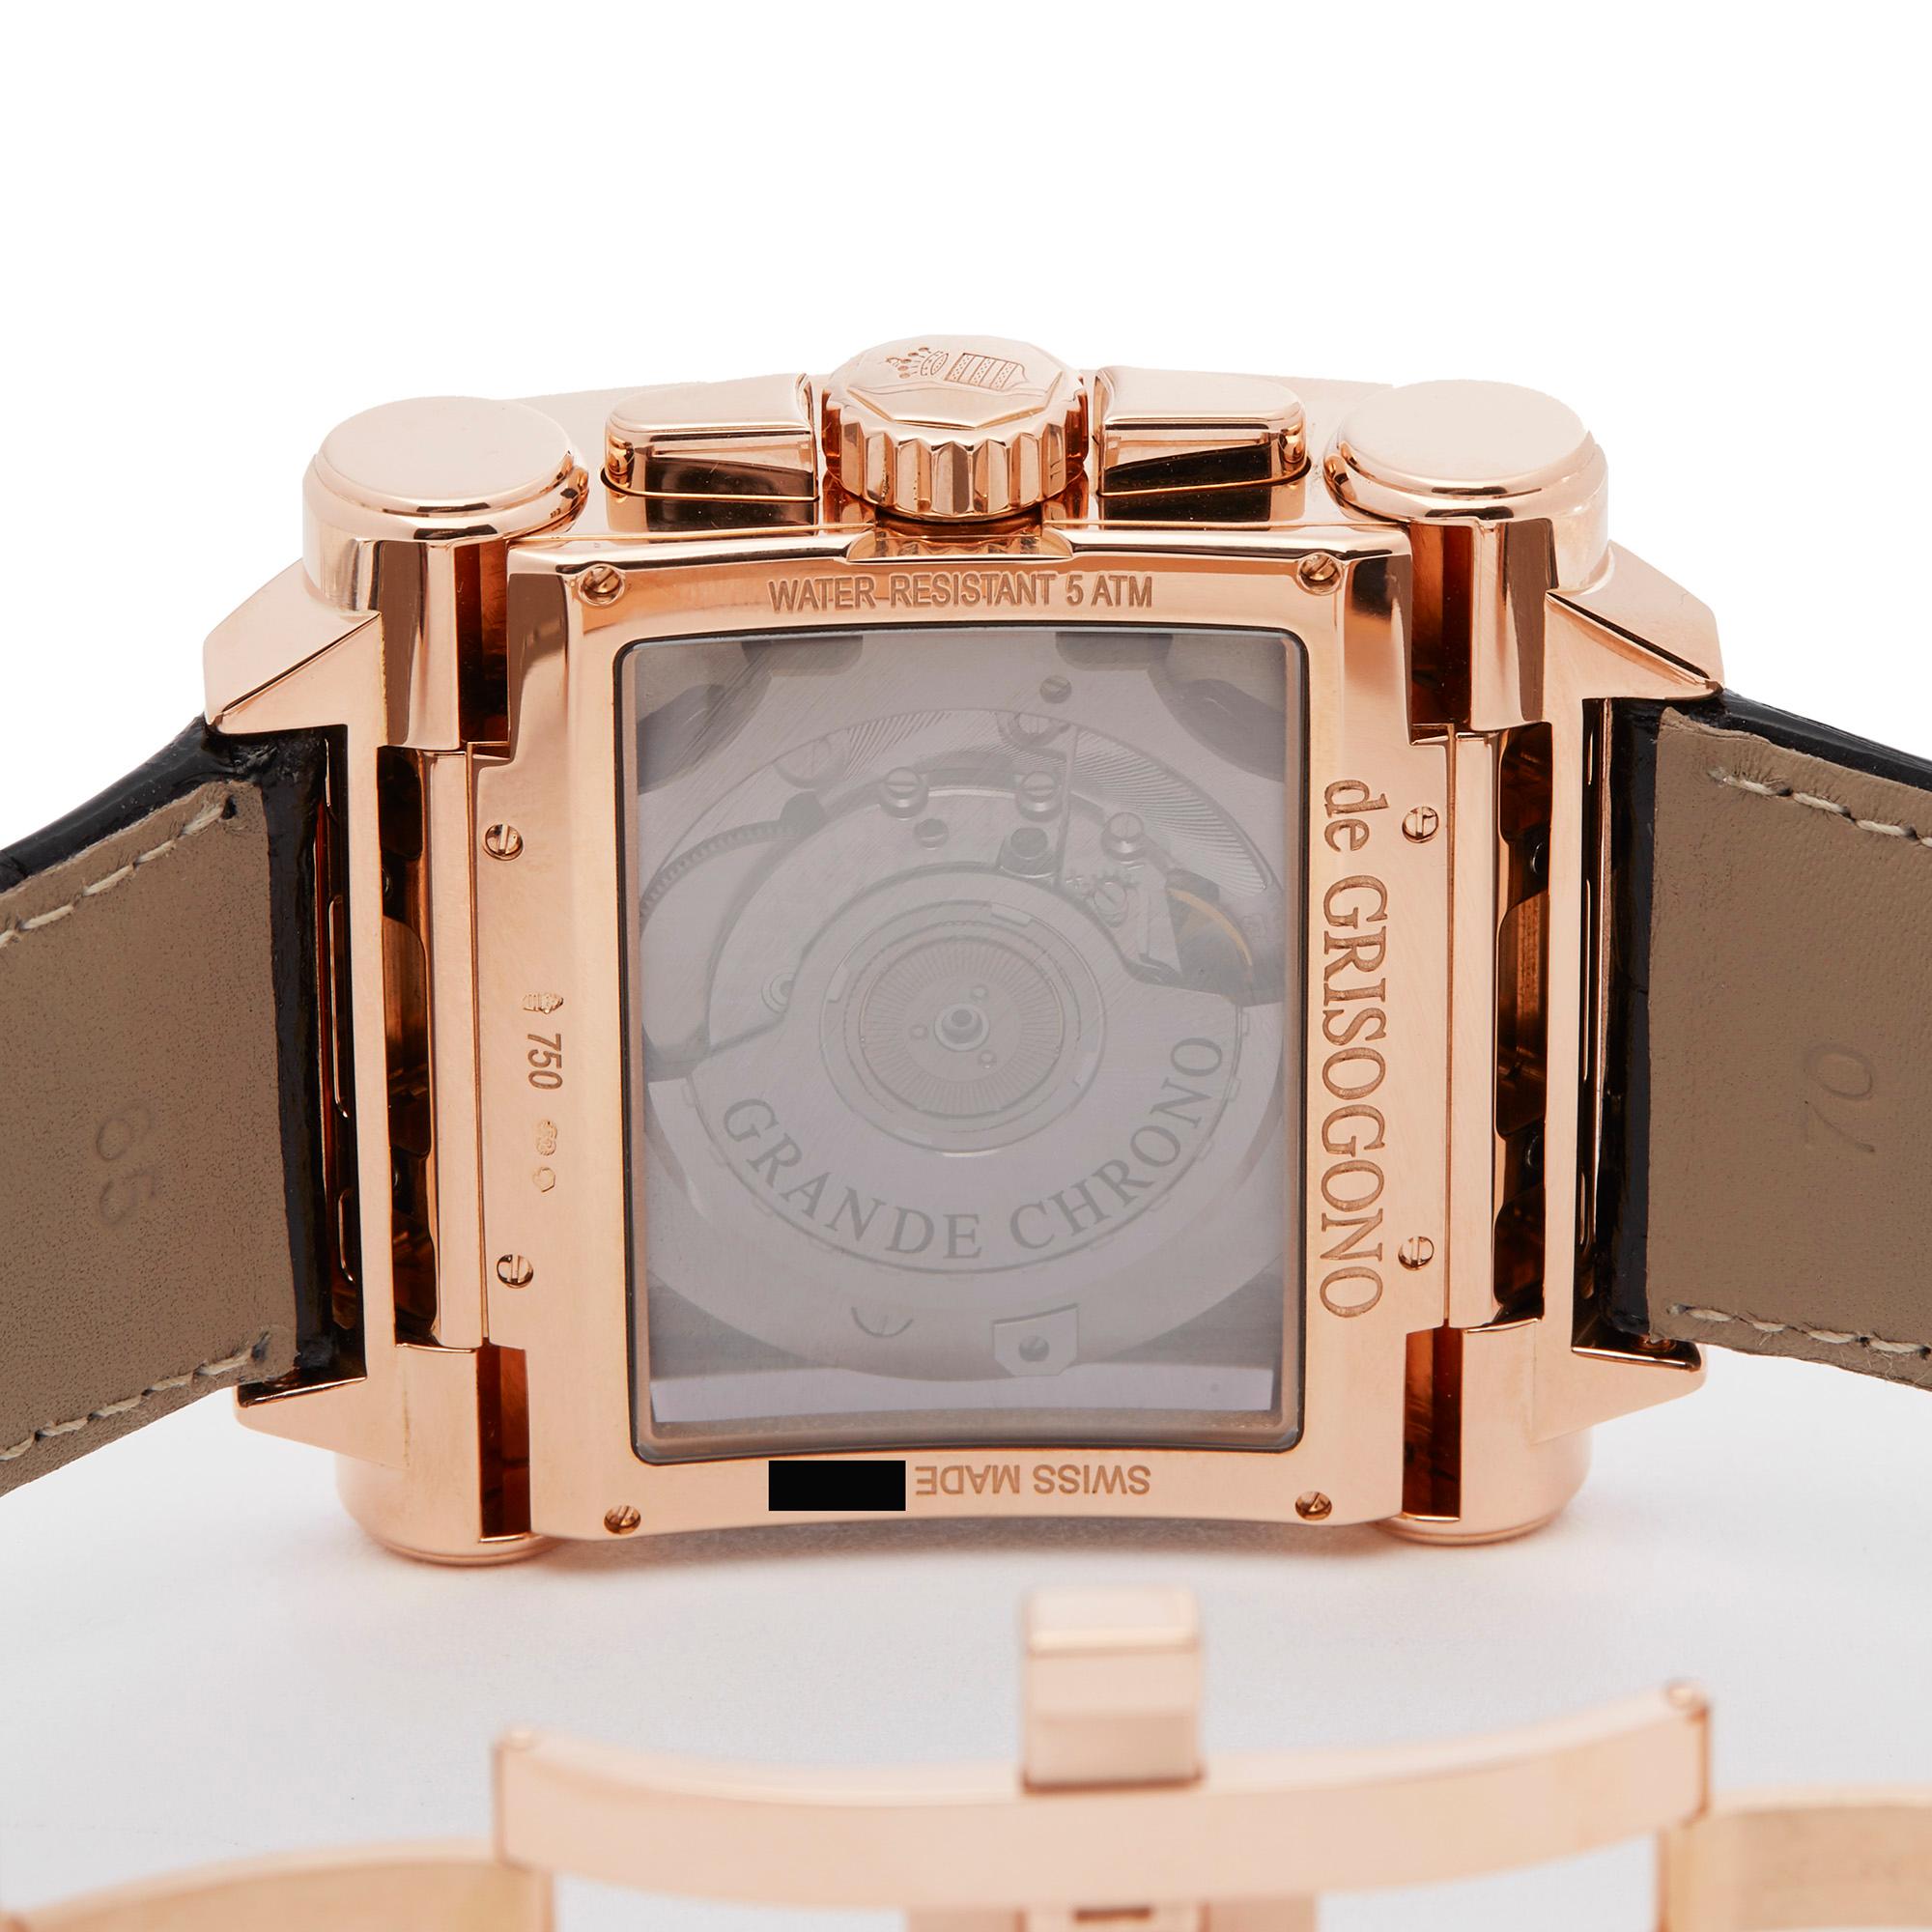 De Grisogono Grande Chrono 18 Karat Rose Gold N02 Wristwatch 2